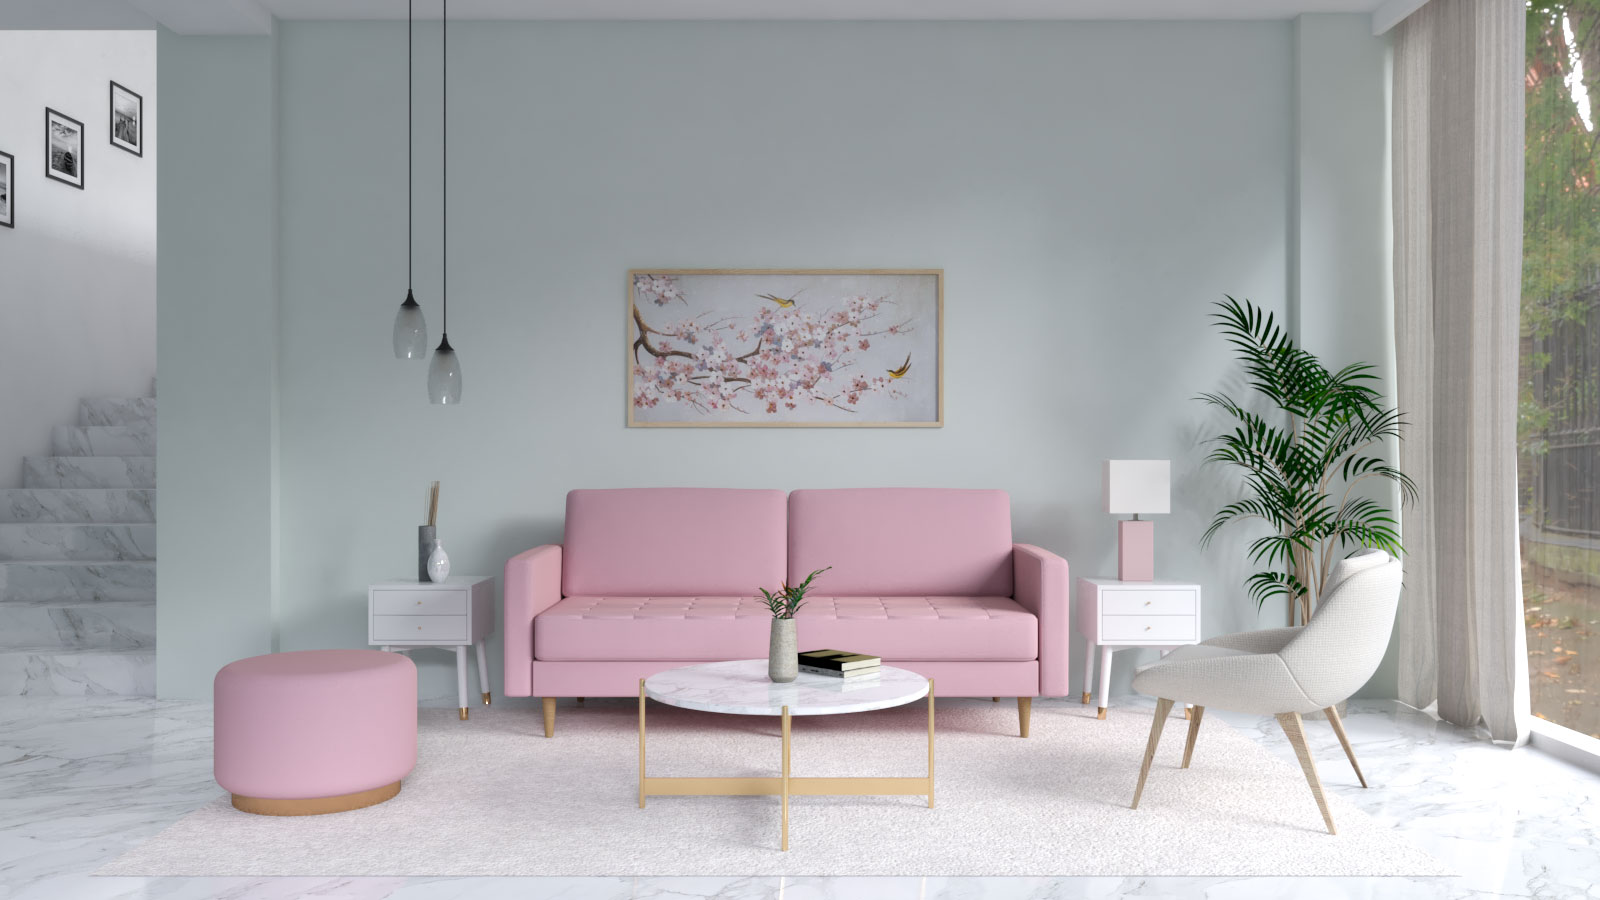 Thiết kế nội thất đẹp với tông màu xanh mint và hồng